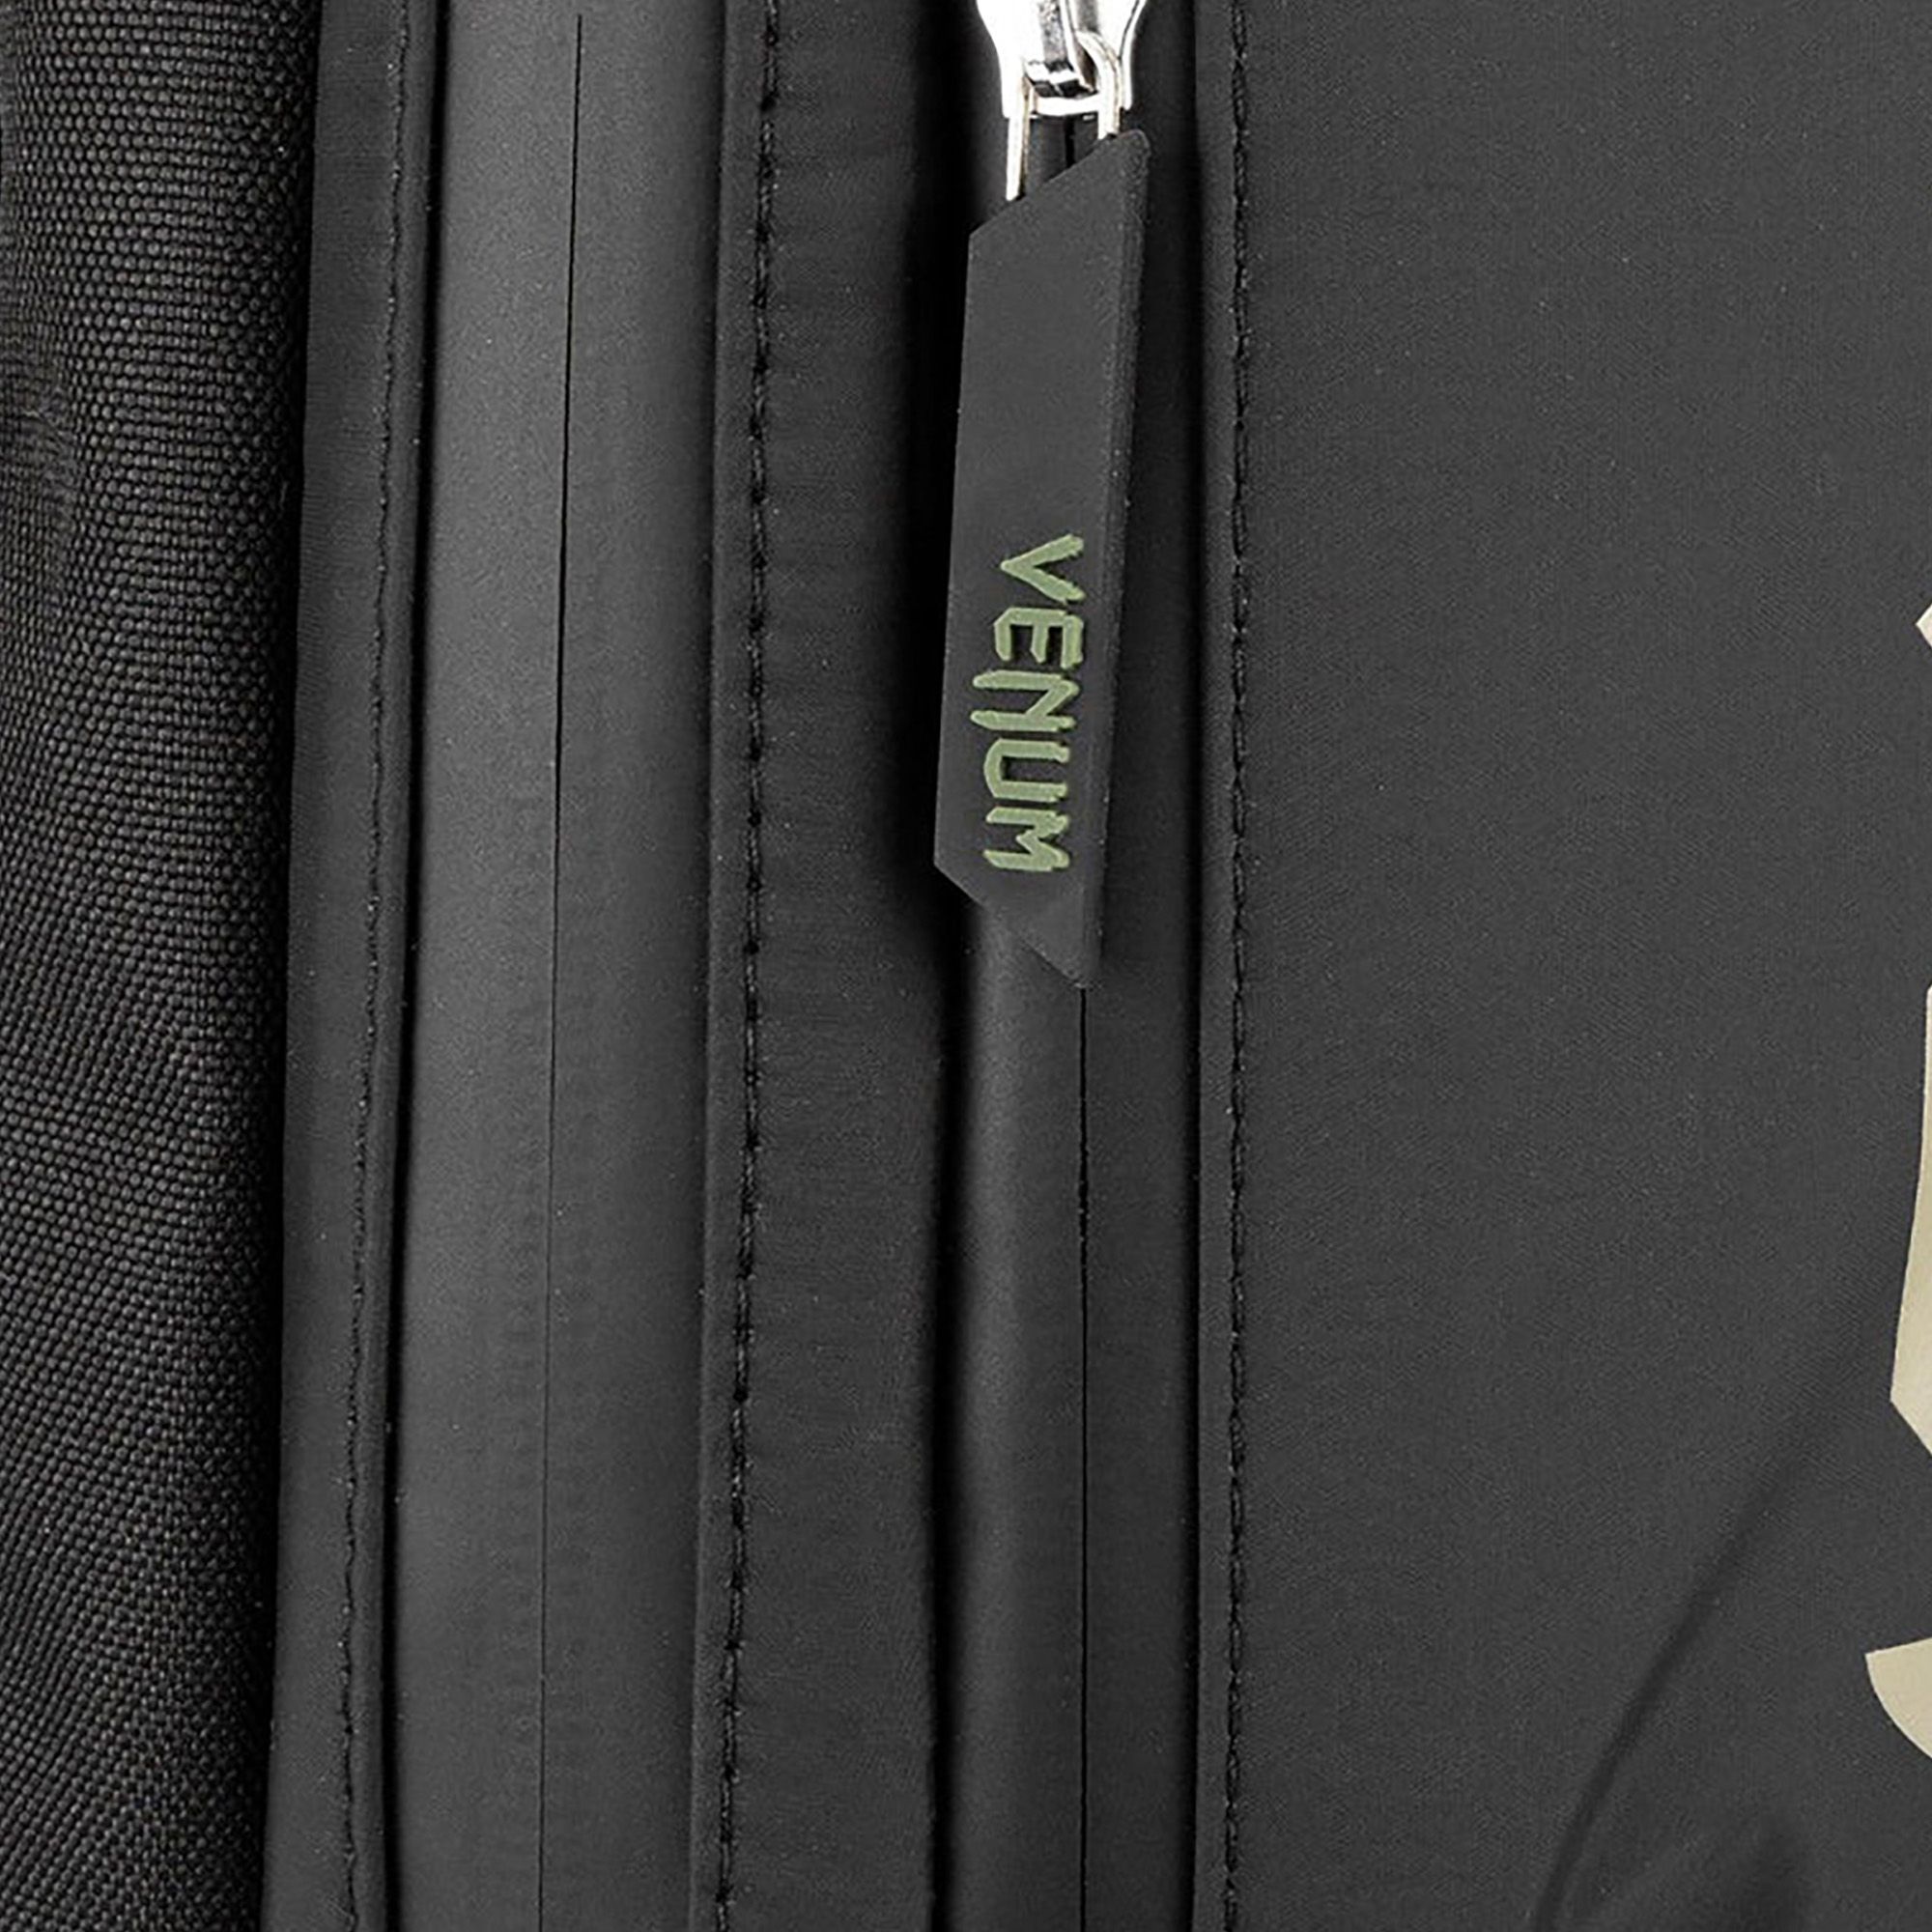  Рюкзак Venum Challenger Pro Evo черный хаки 